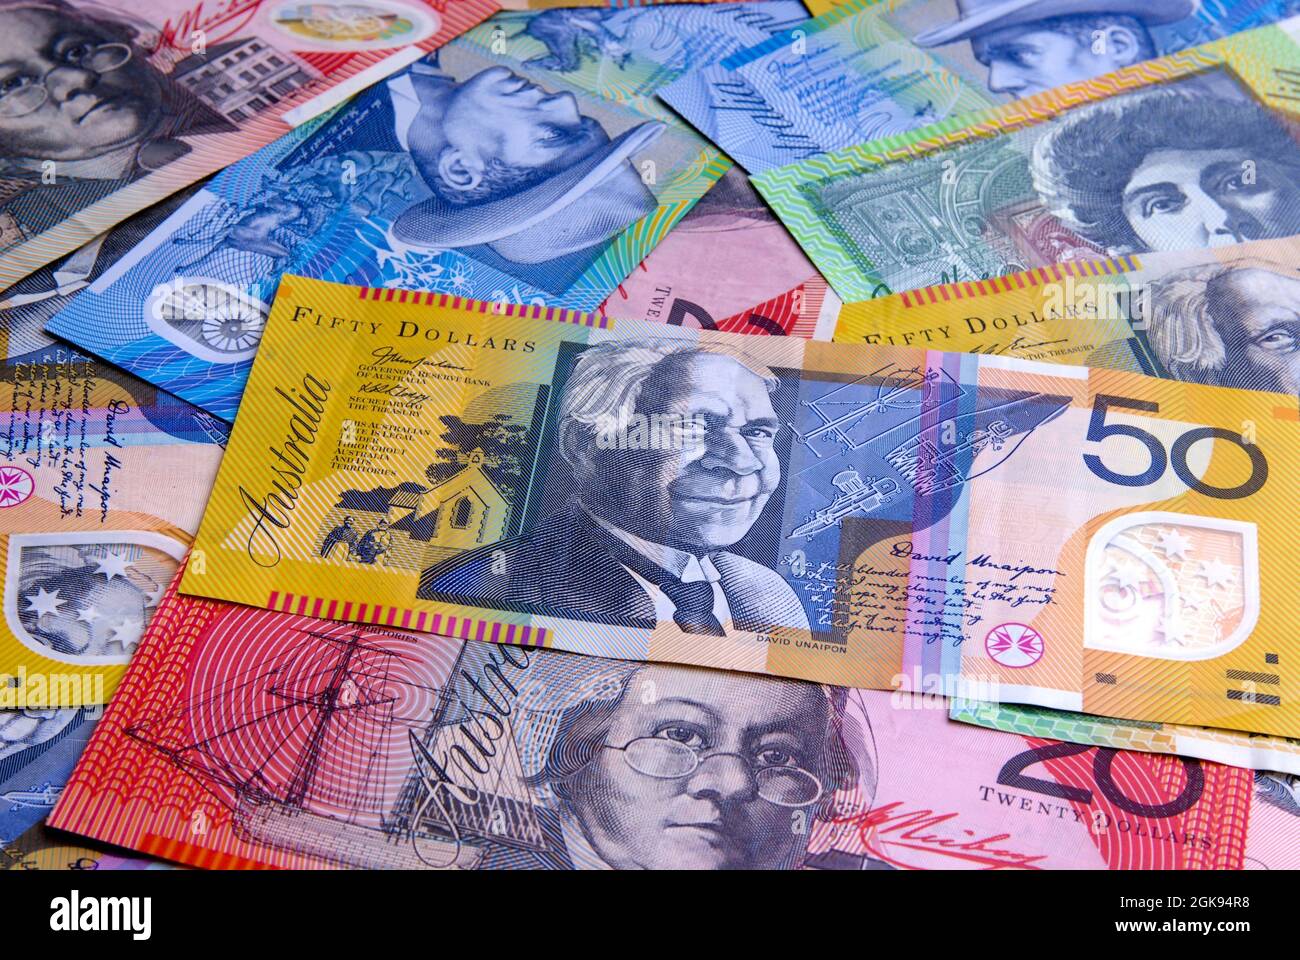 Australien dollar bills, Australia Stock Photo